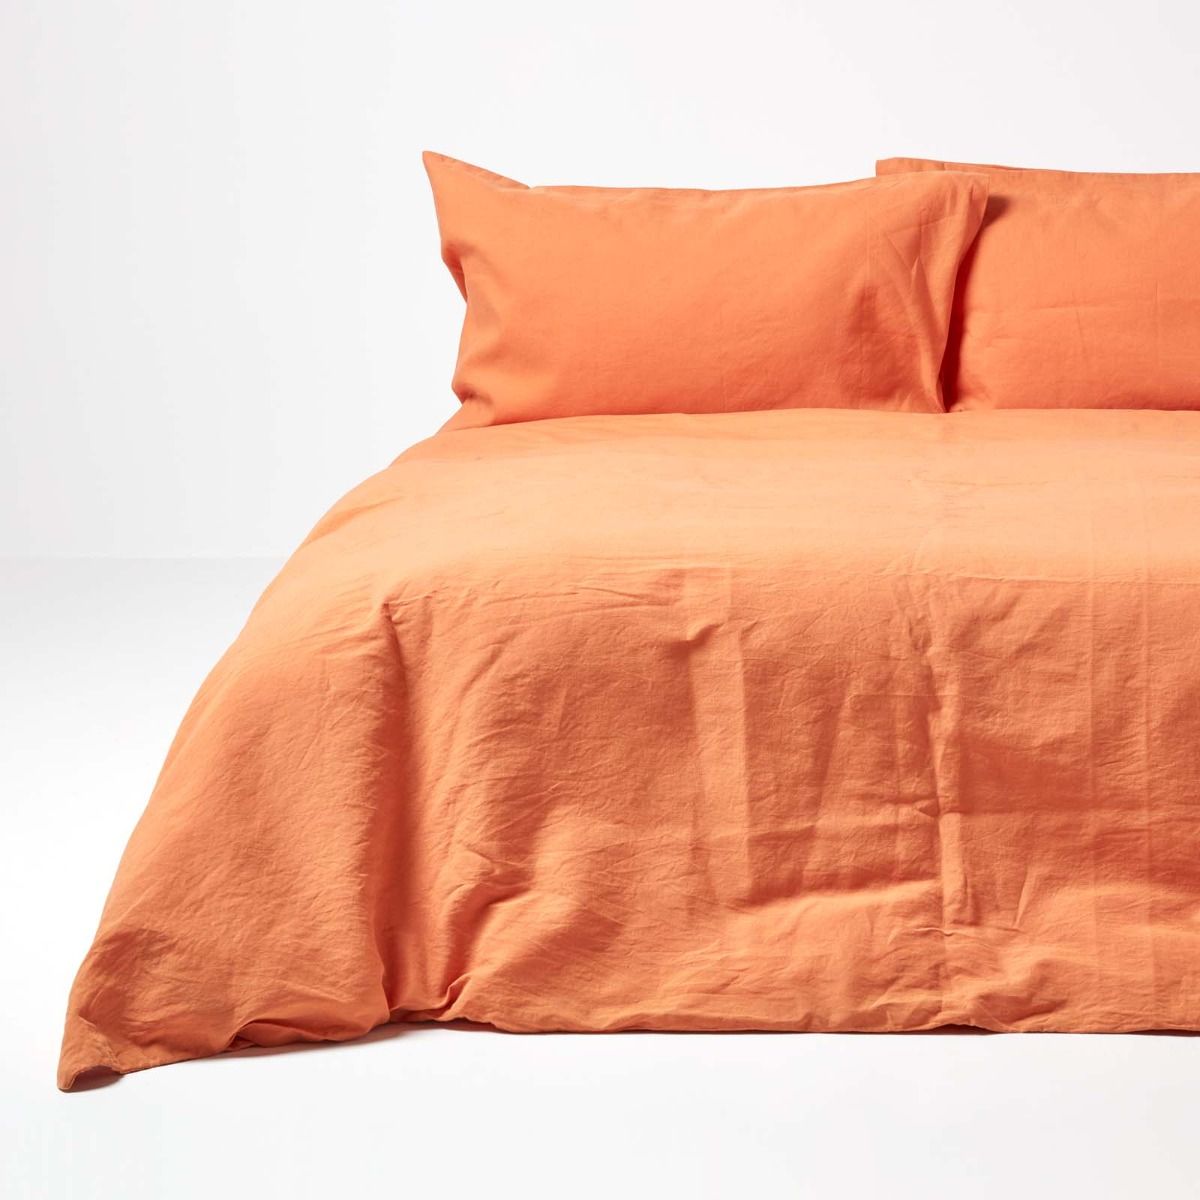 Burnt Orange European Linen Duvet Cover Set, Orange Duvet Cover King Size